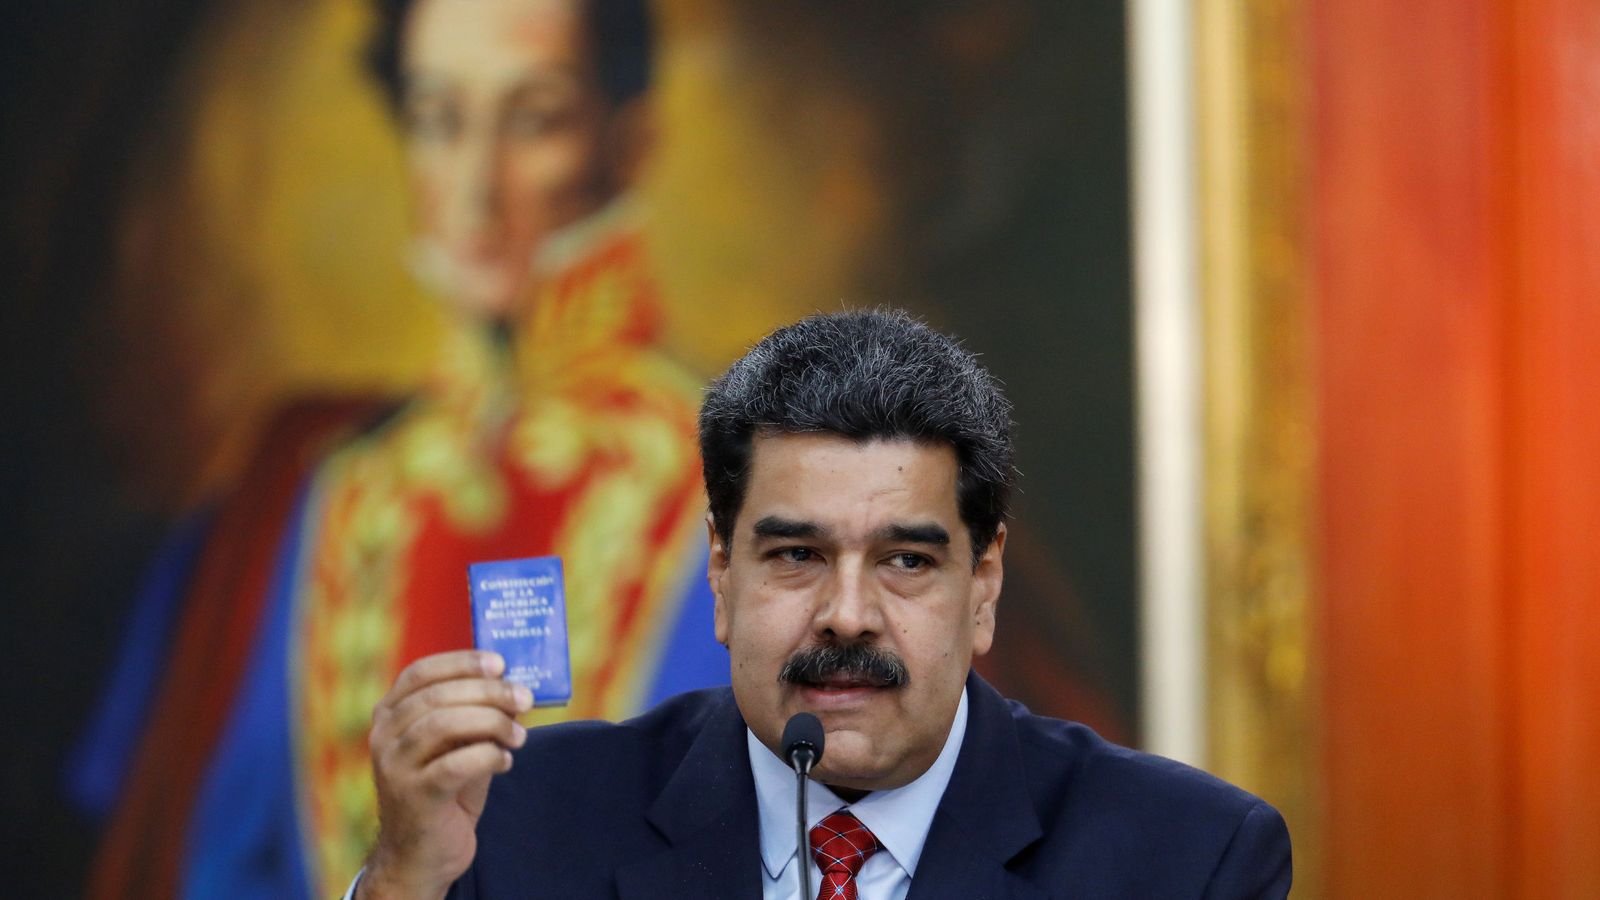 Foto: El presidente de Venezuela, Nicolás Maduro, da una rueda de prensa en el Palacio de Miraflores. (Reuters)